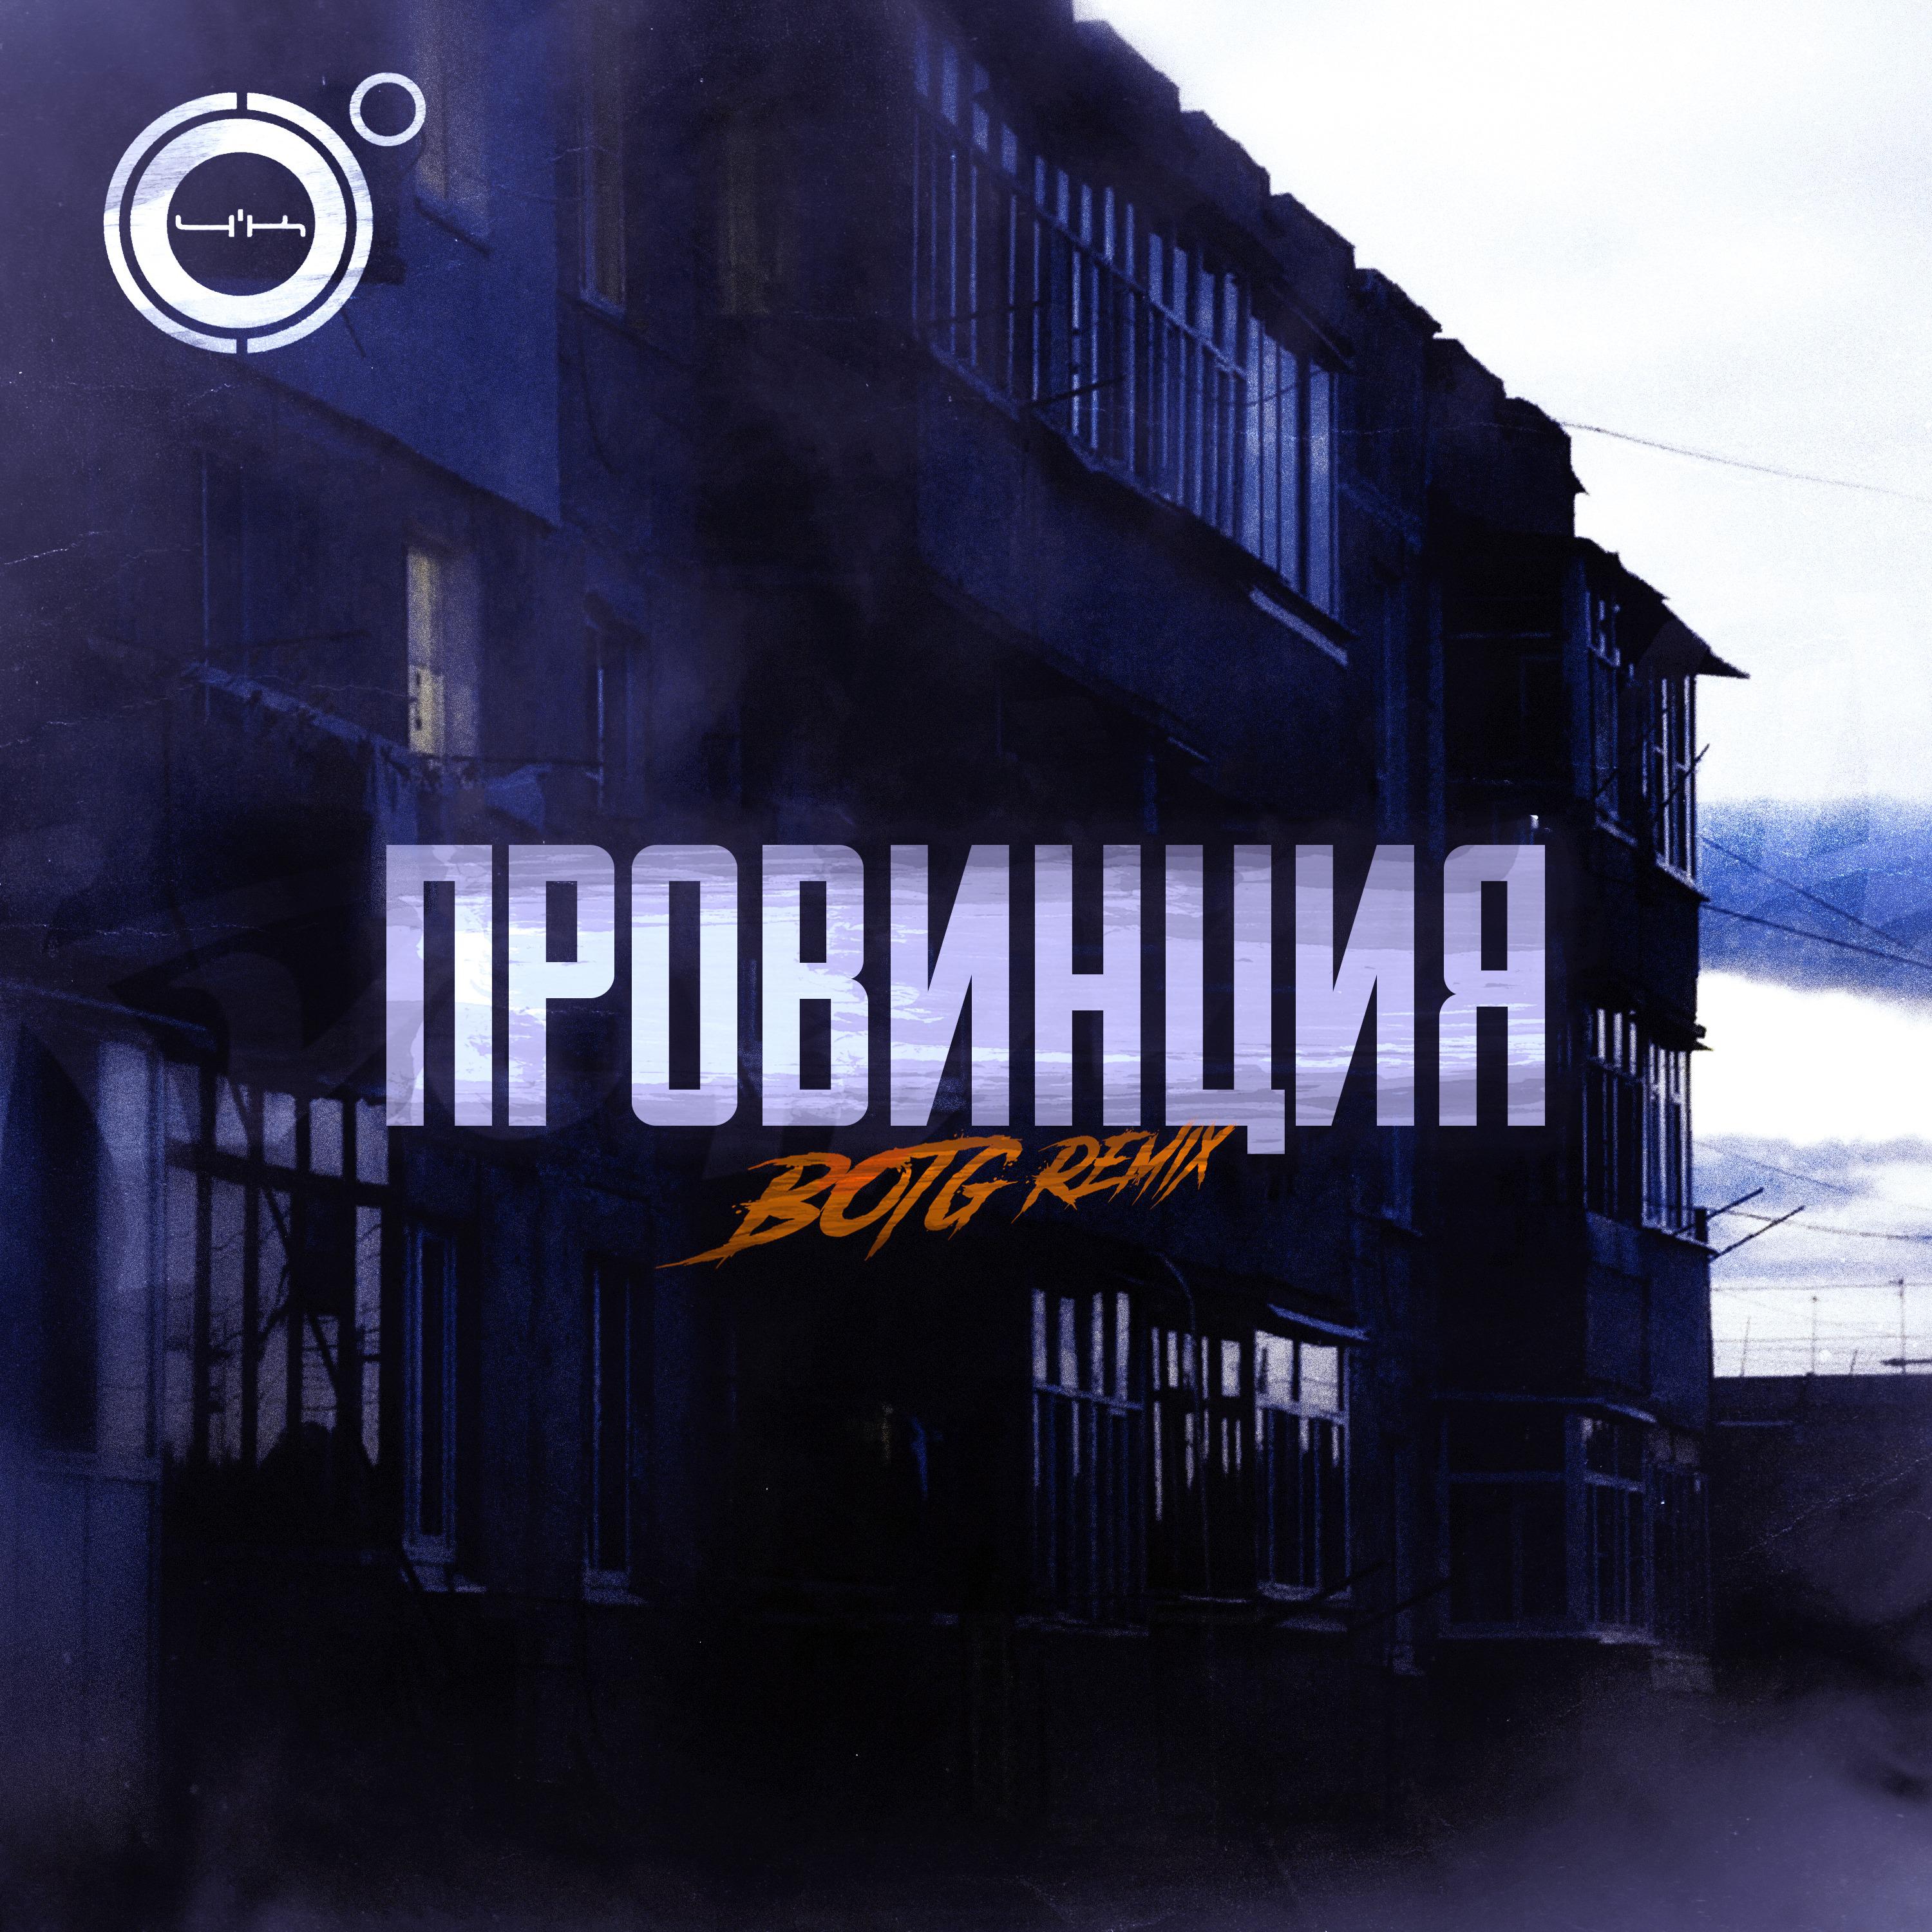 4k - Провинция (BOTG Remix)